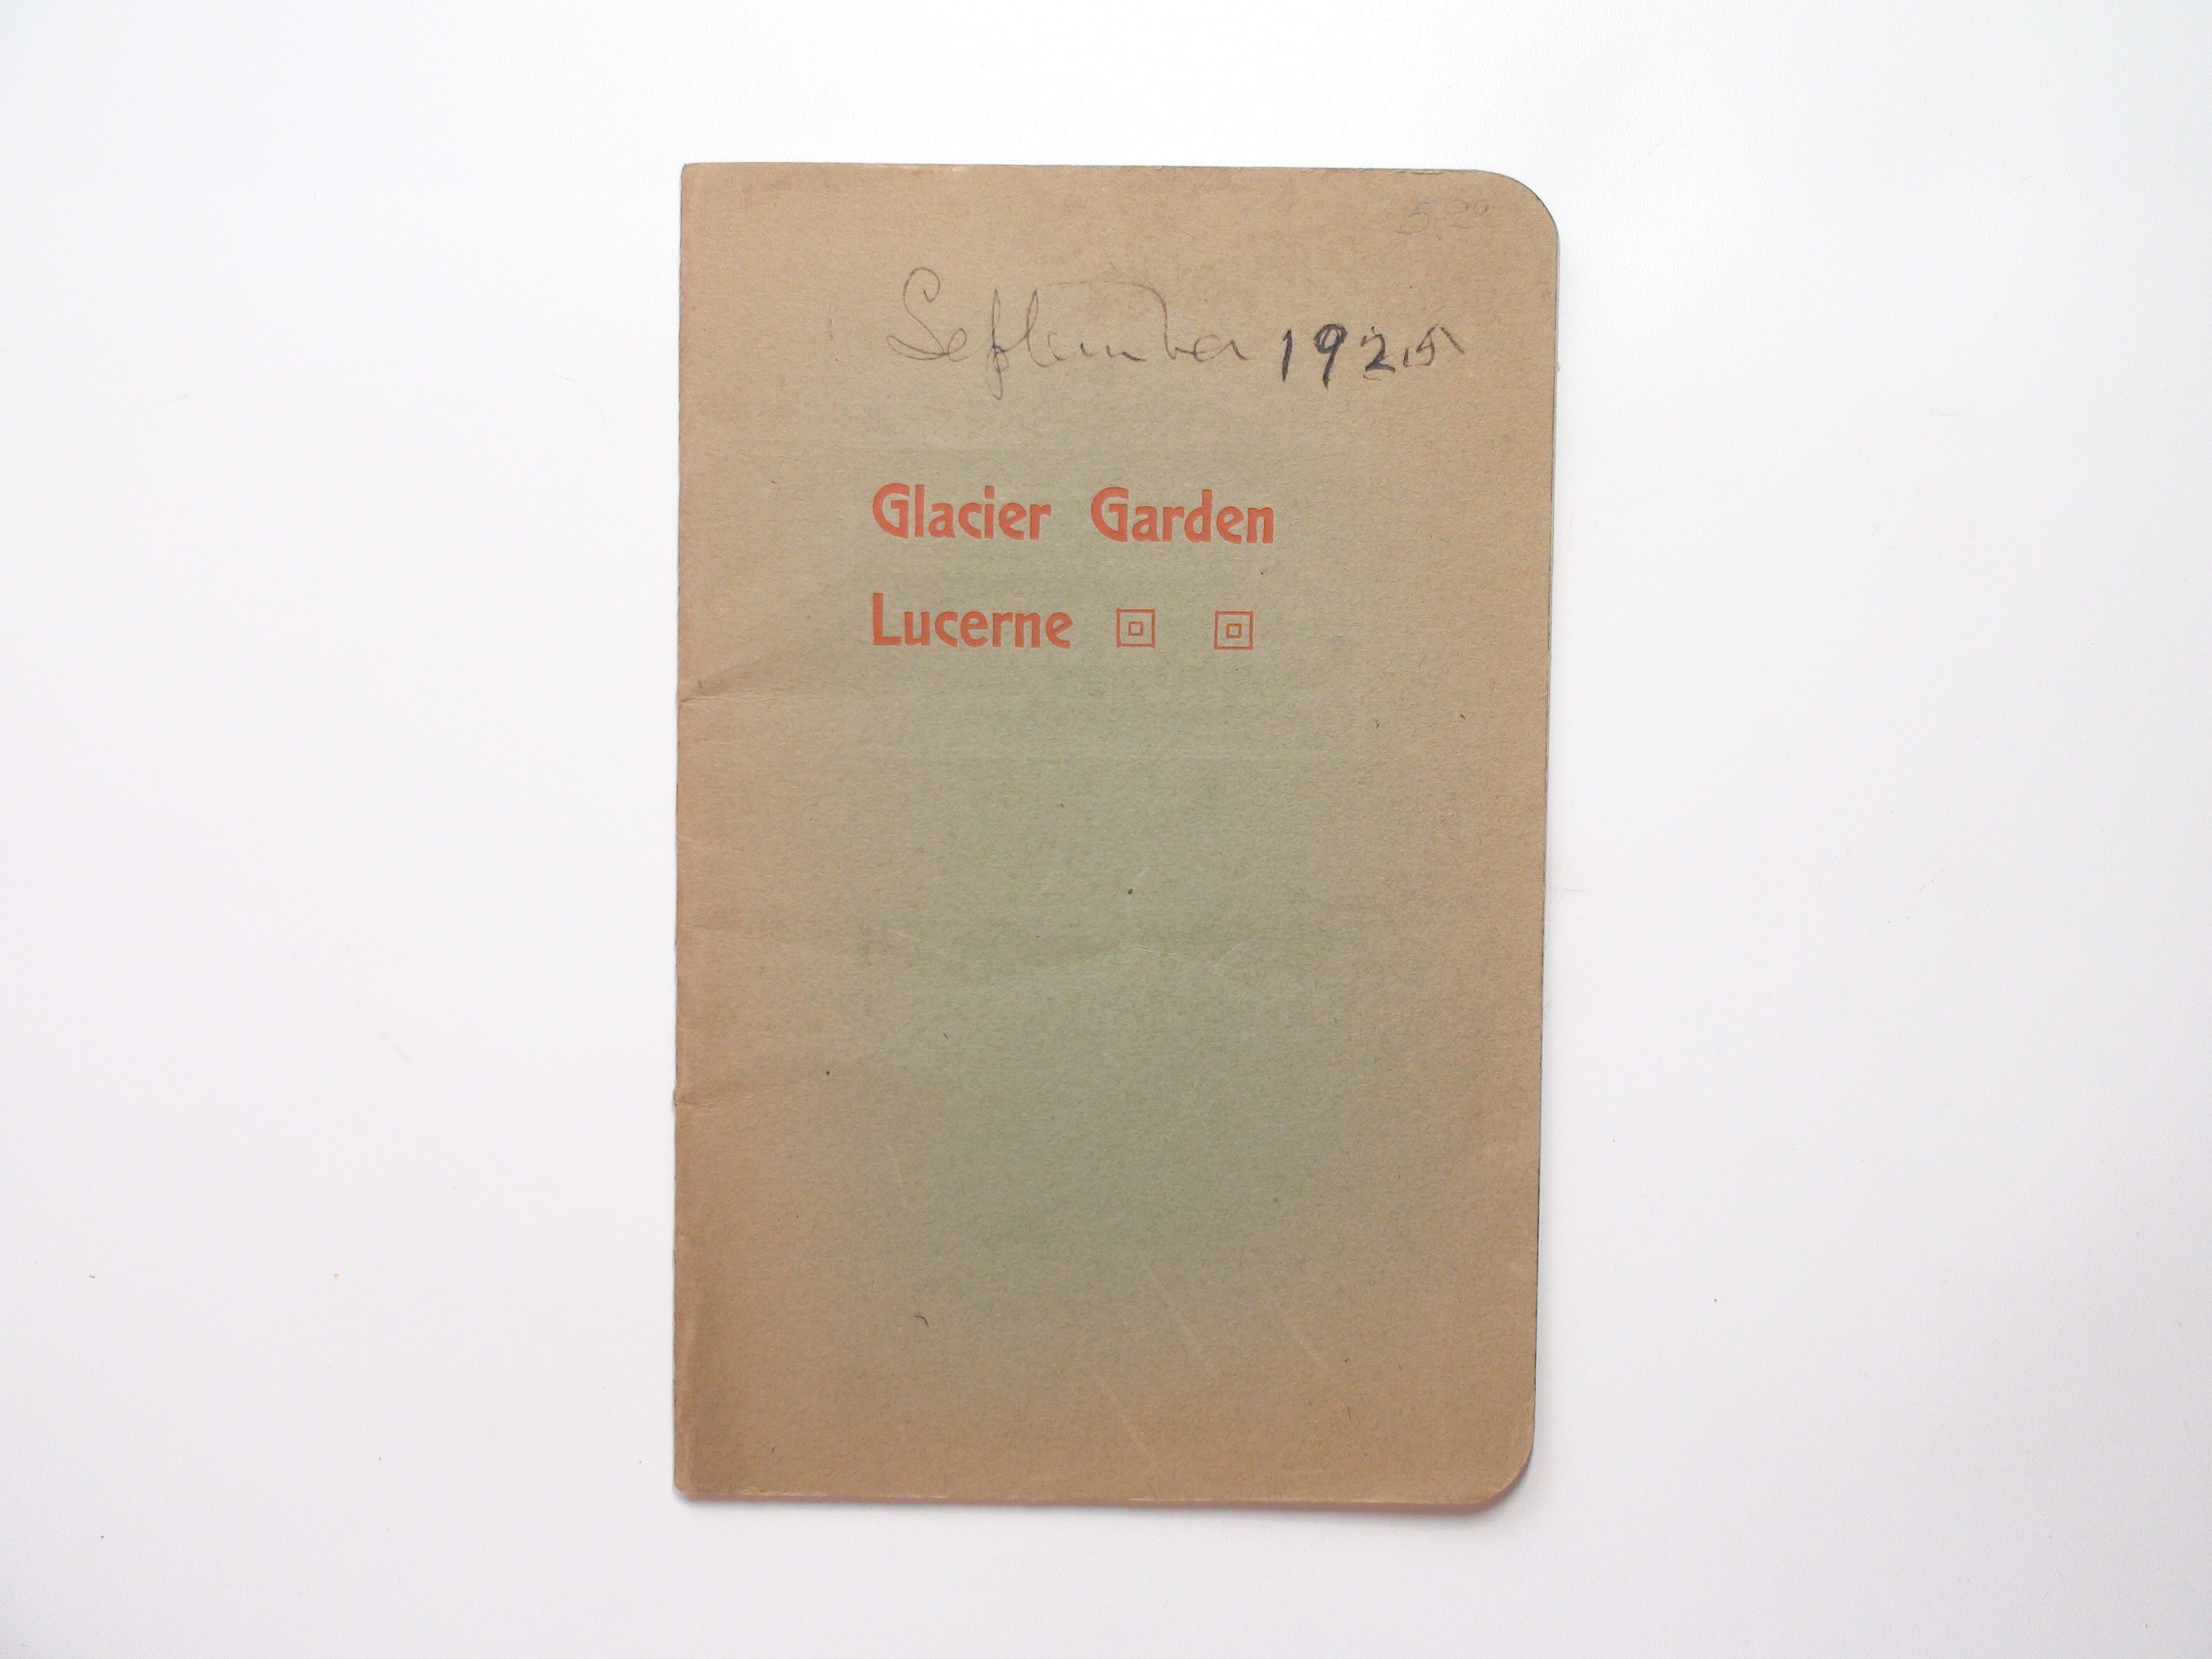 Glacier Garden Lucerne, by Albert Heim, Swiss Souvenir Book, Illustrated, 1925